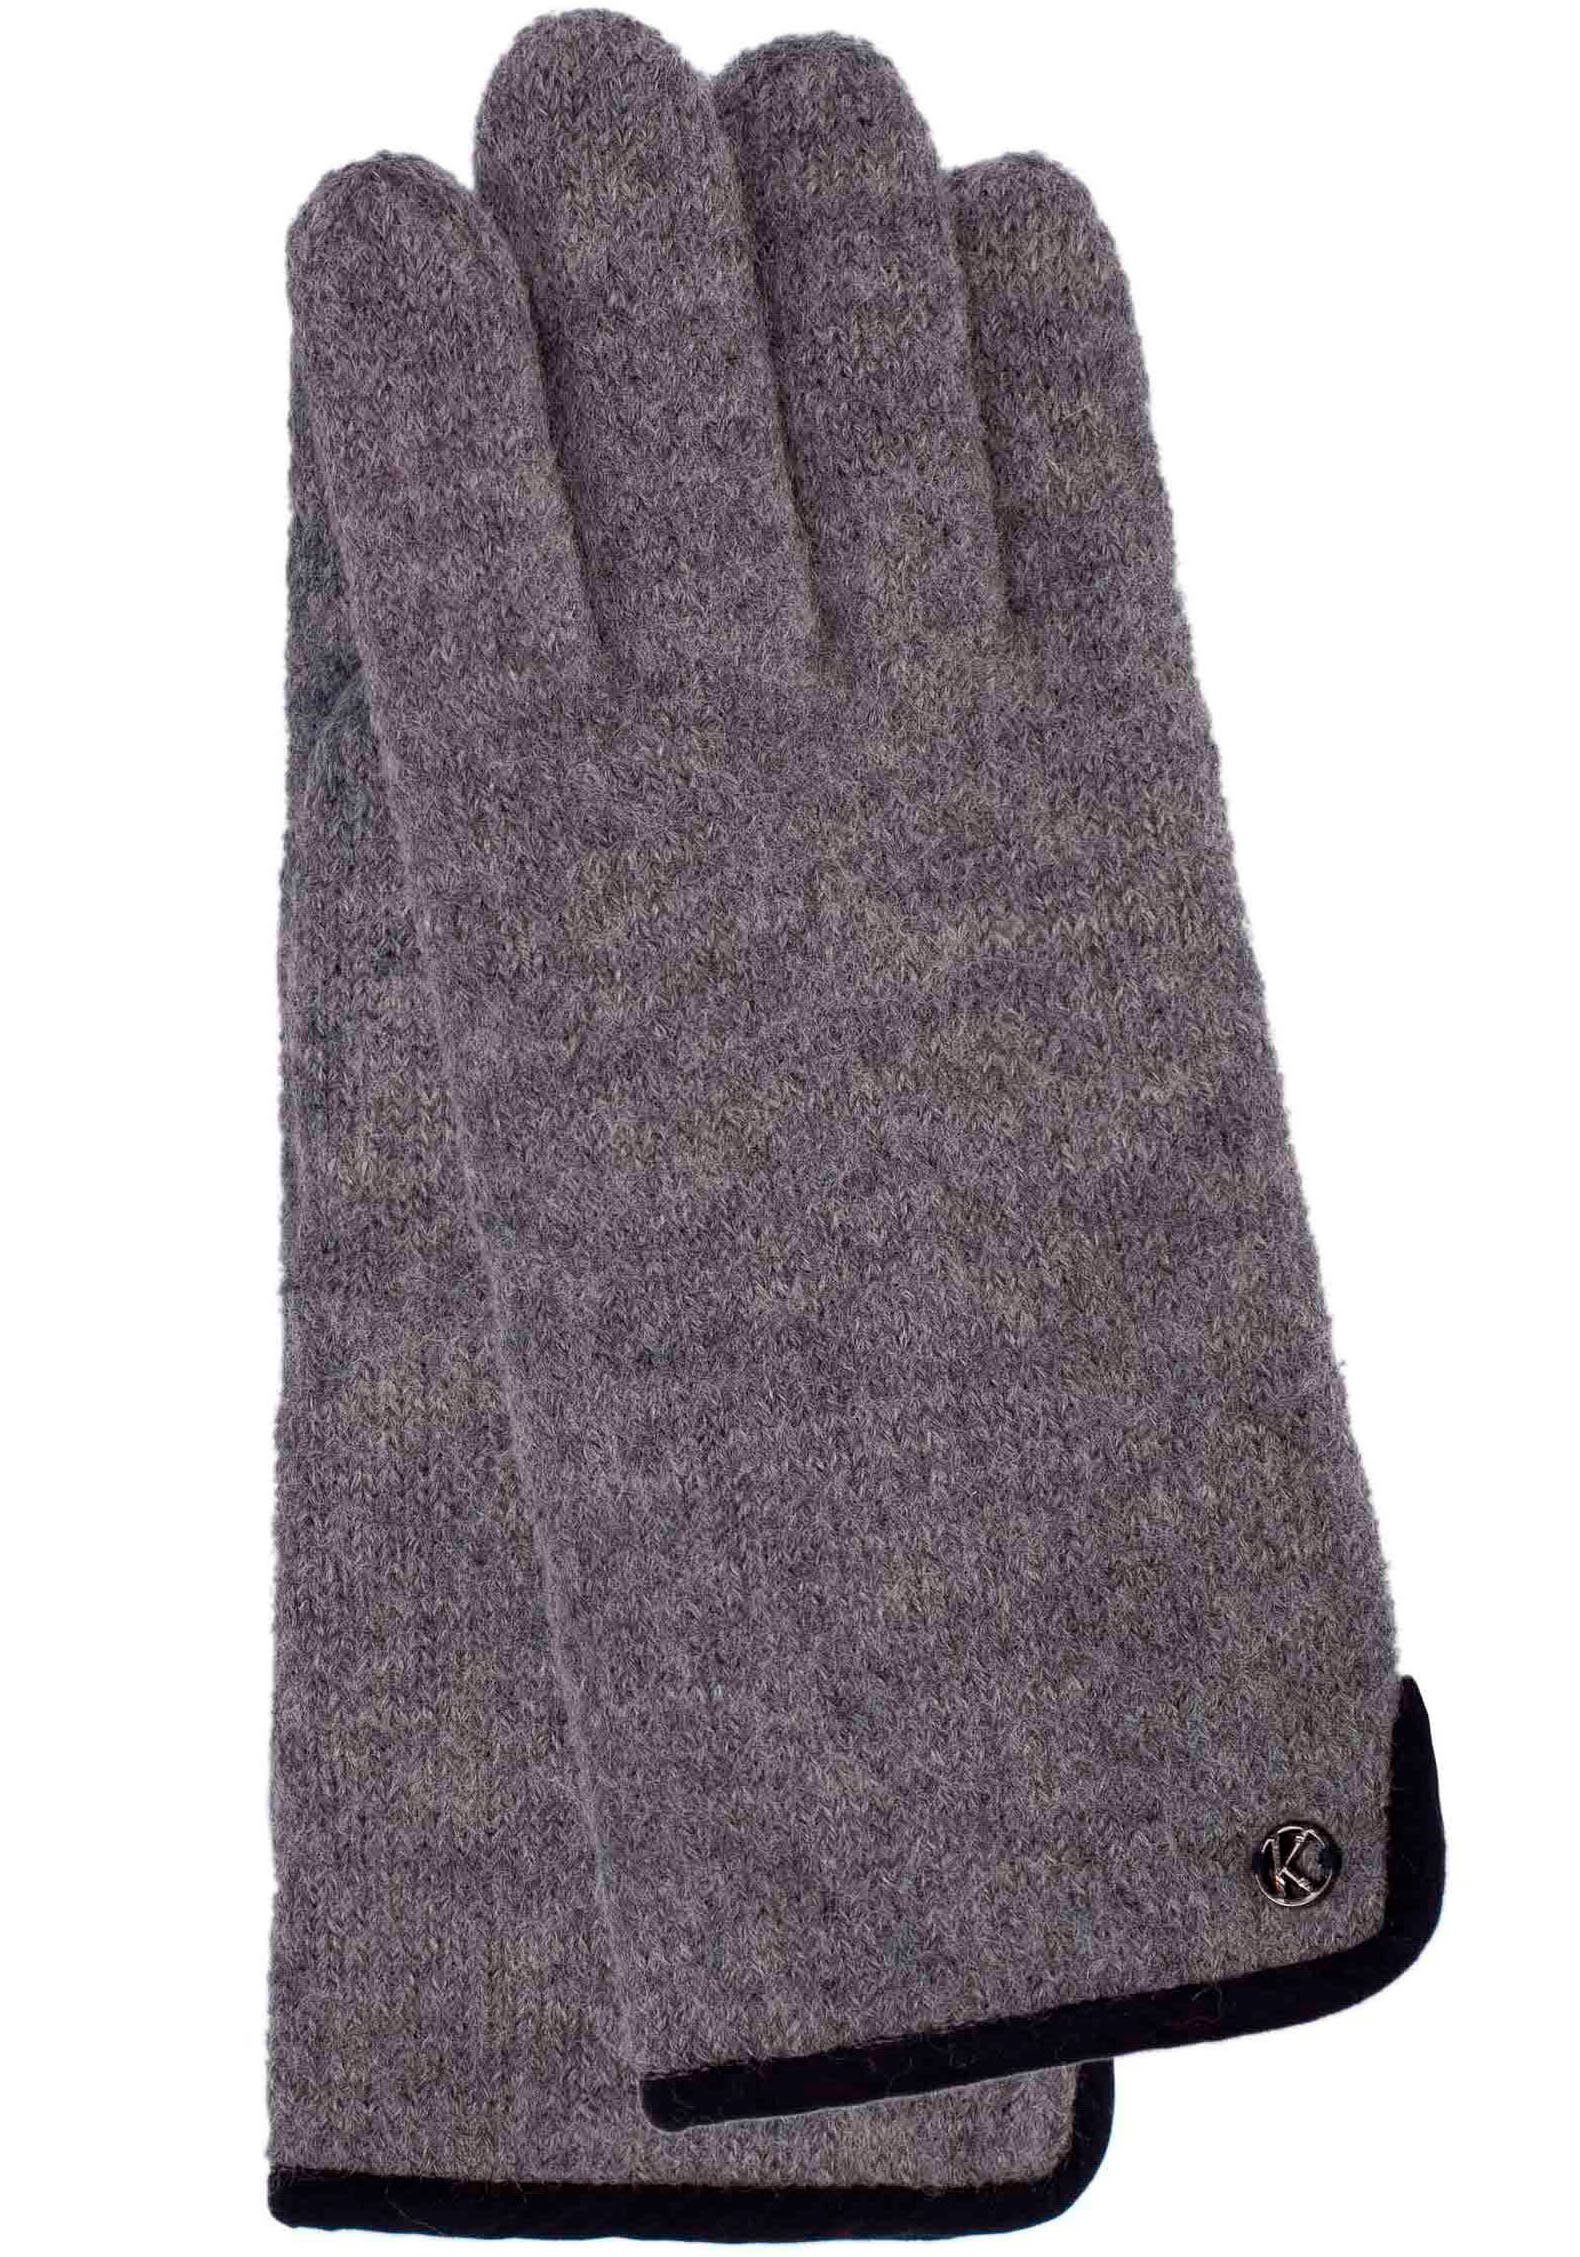 Sasha Wind- Wasserabweised und Strickhandschuhe grey light KESSLER Schurwolle, gewalkter melange aus